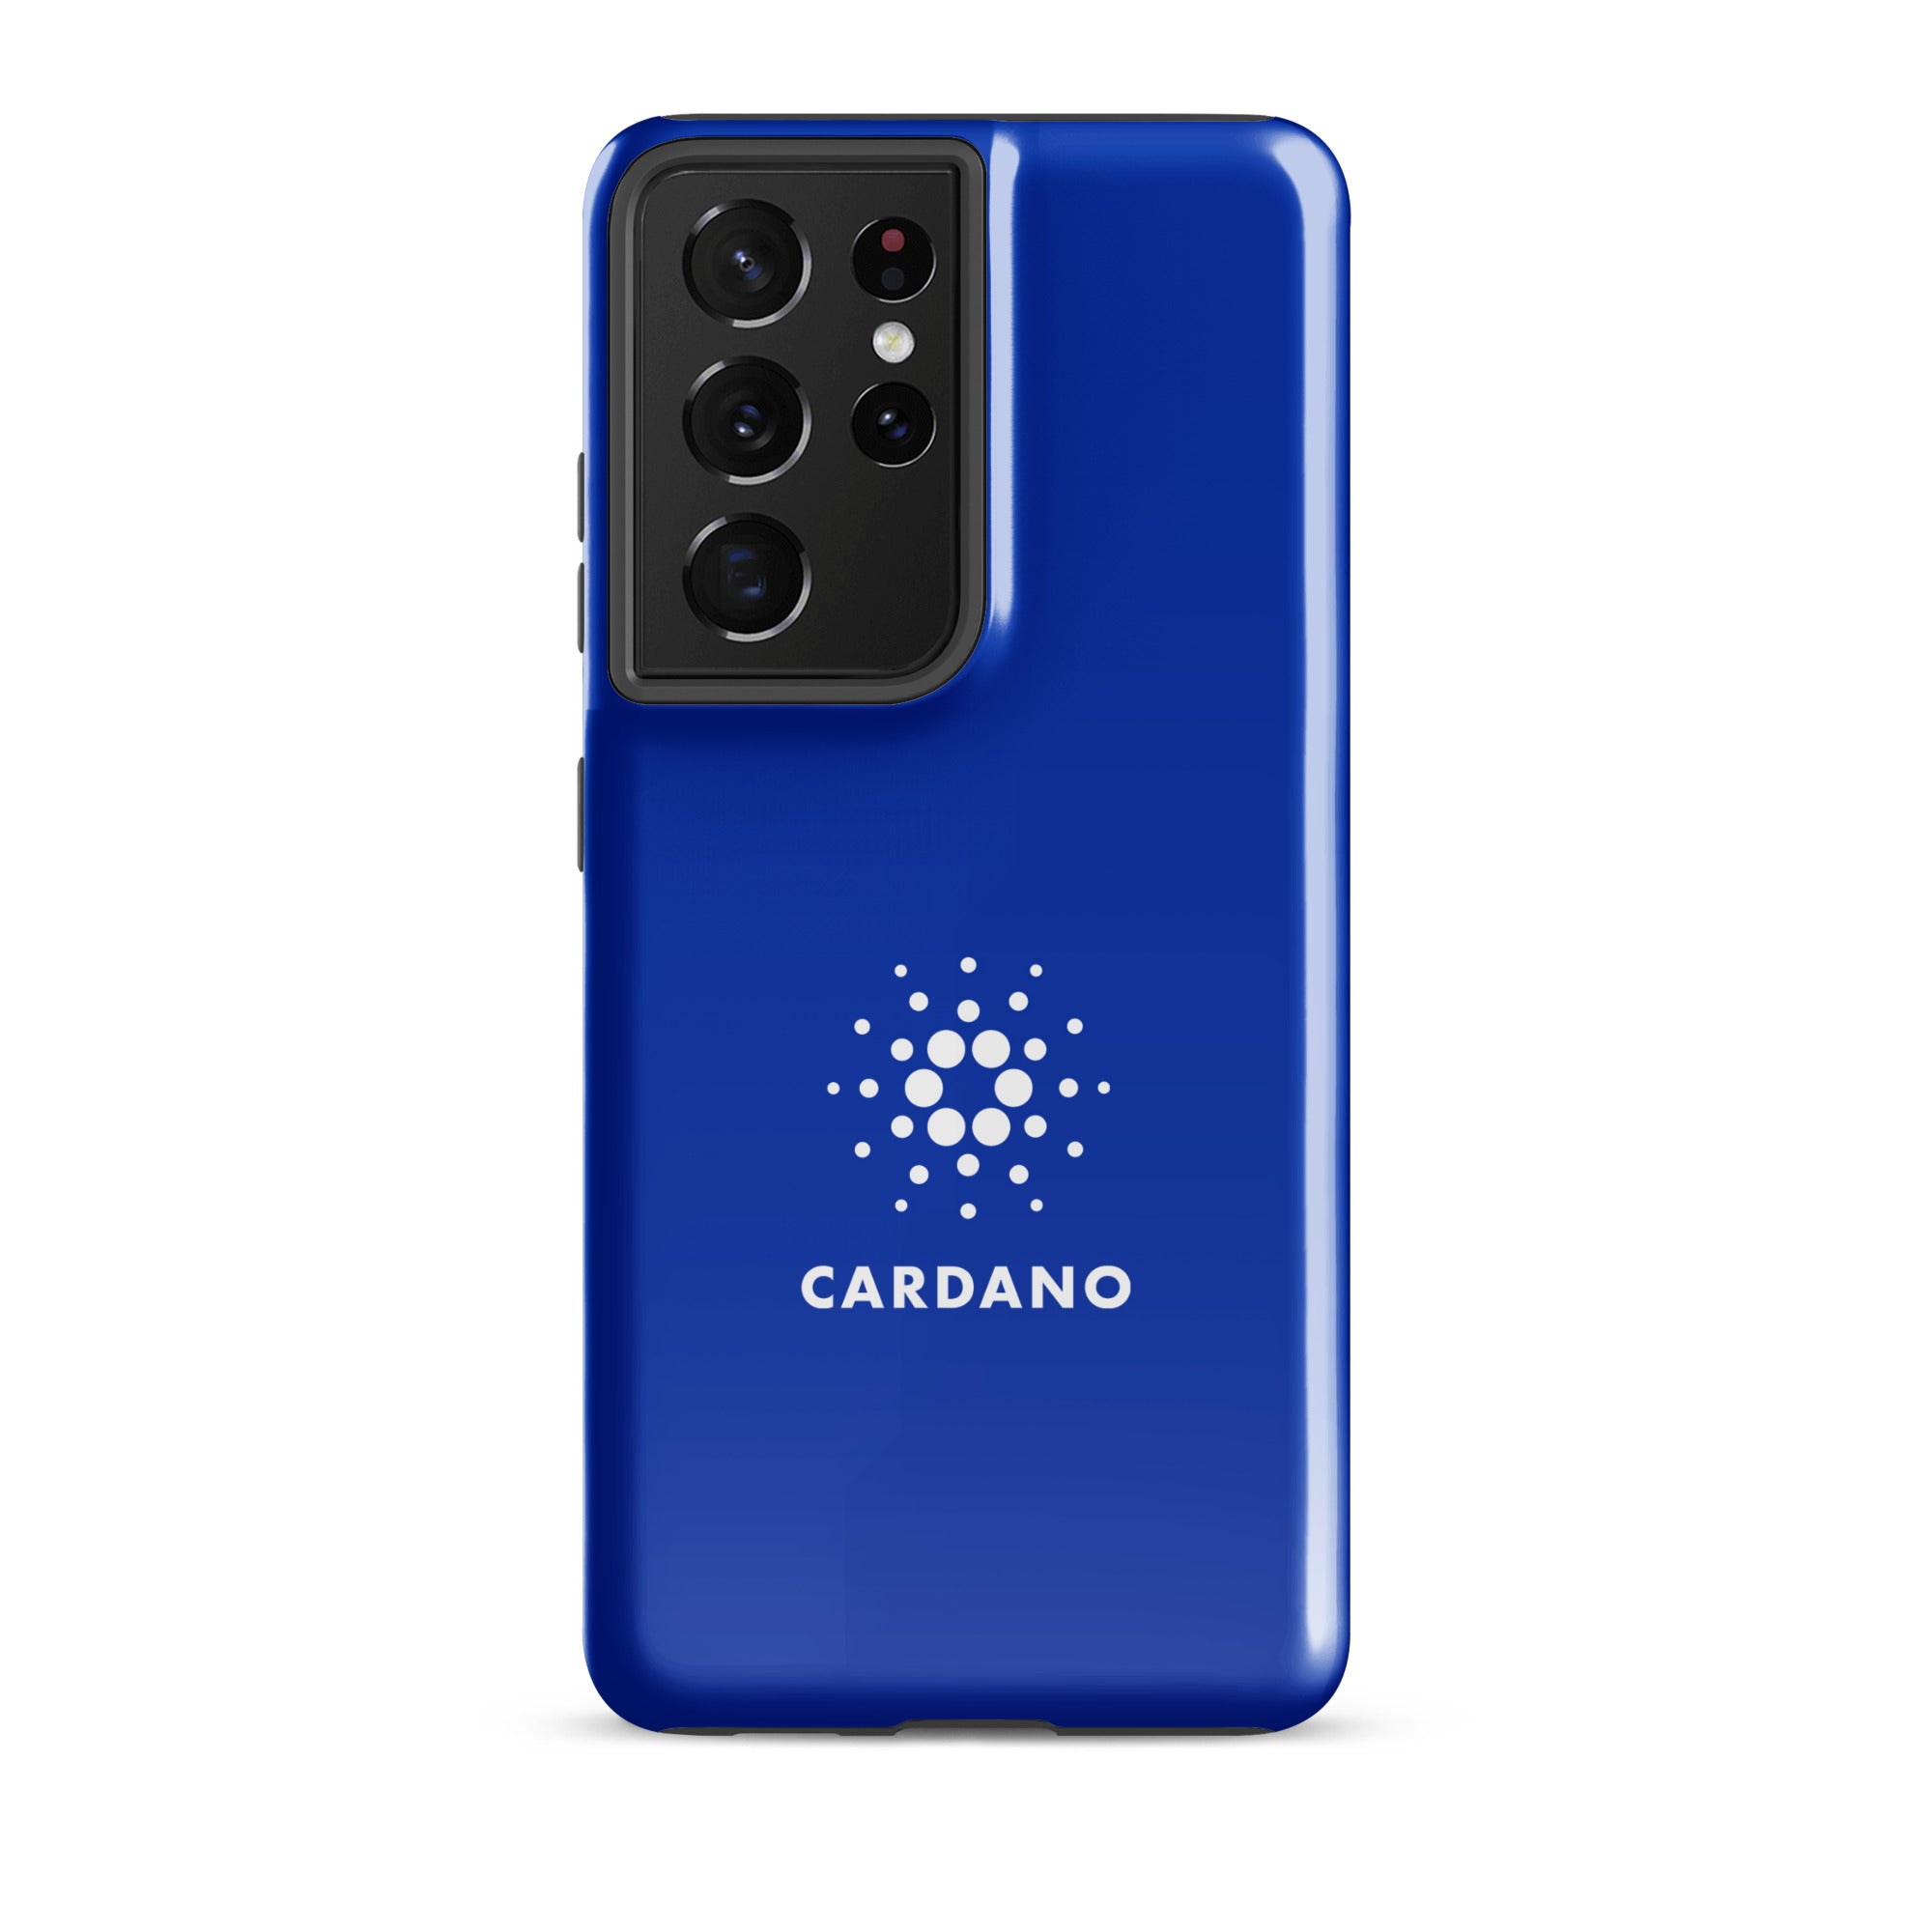 Tough case for Samsung® Cardano